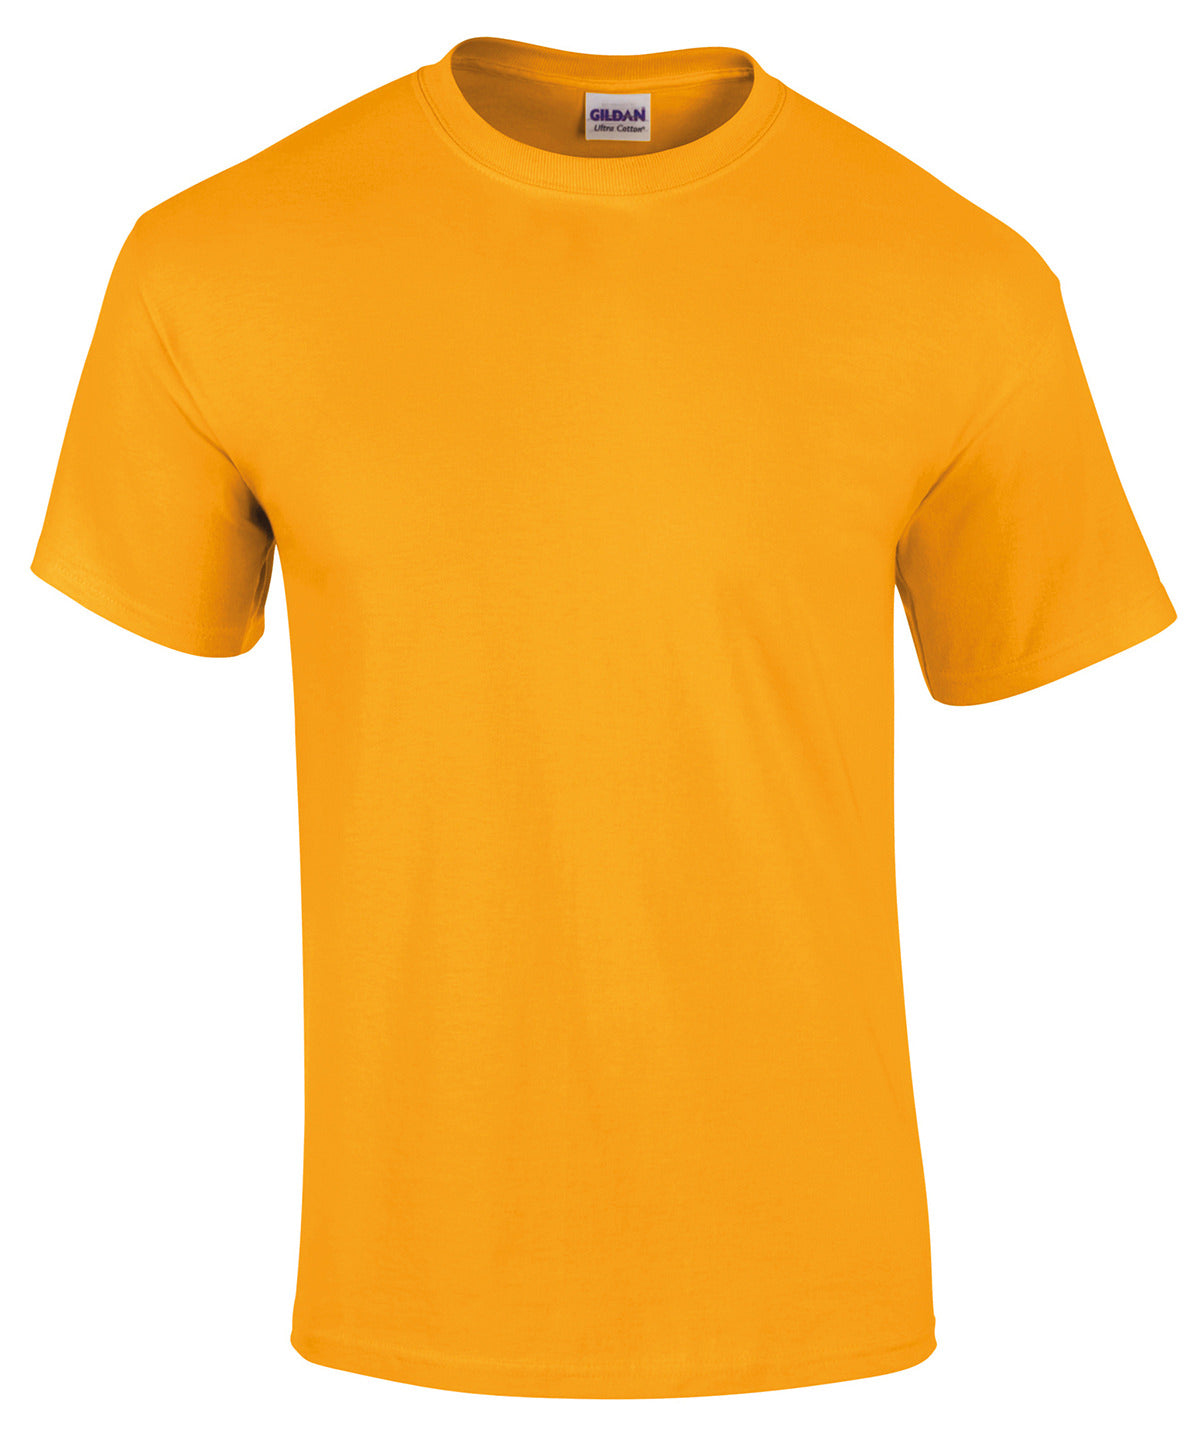 Gildan Ultra Cotton adult t-shirt Gold